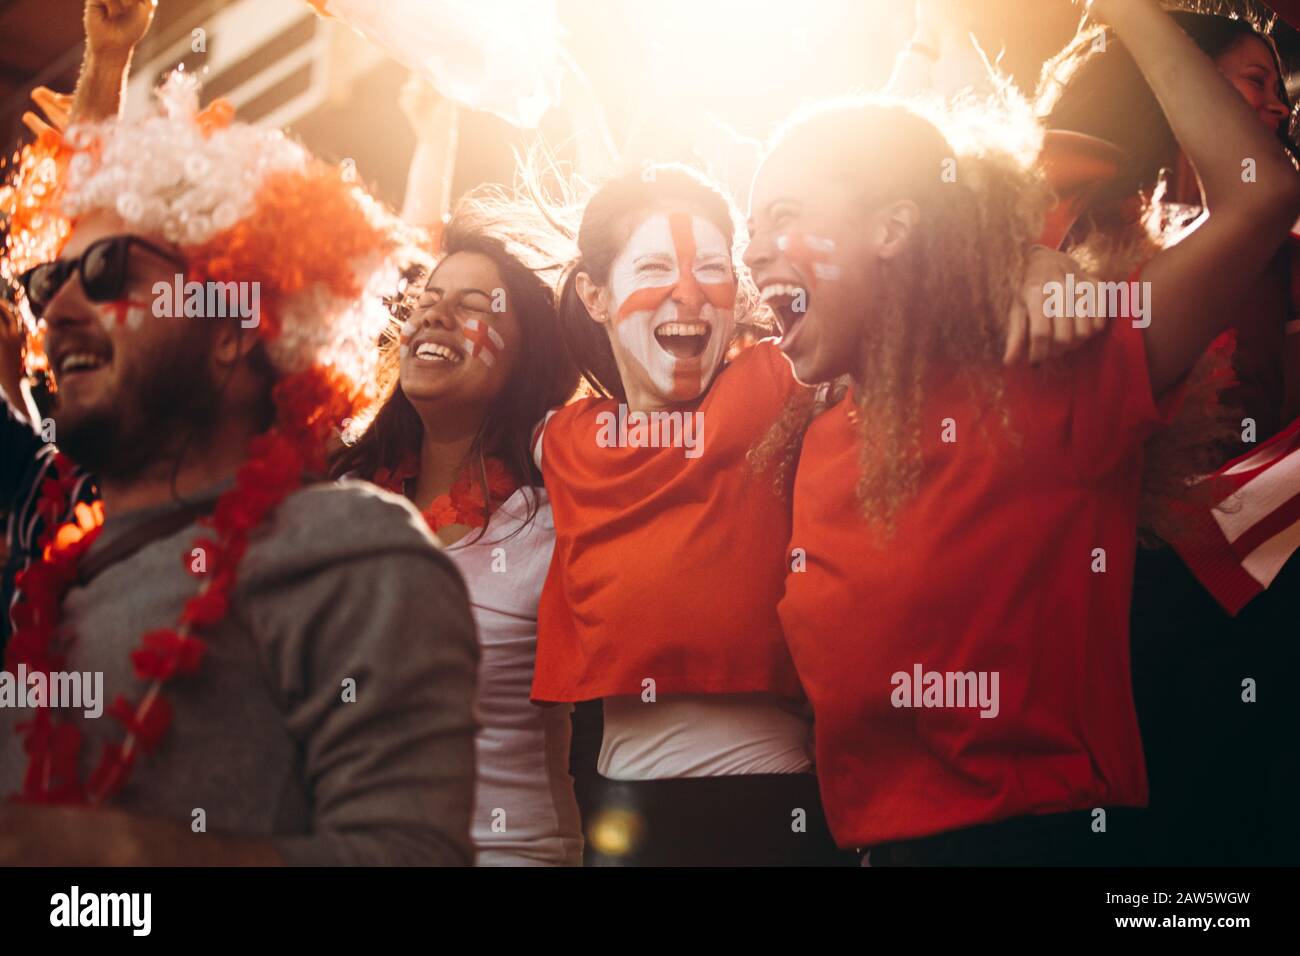 Inghilterra tifosi di calcio rallegrando in stand. Le donne con bandiera inglese dipinte sul loro volto divertendosi nella zona dei tifosi allo stadio. Foto Stock